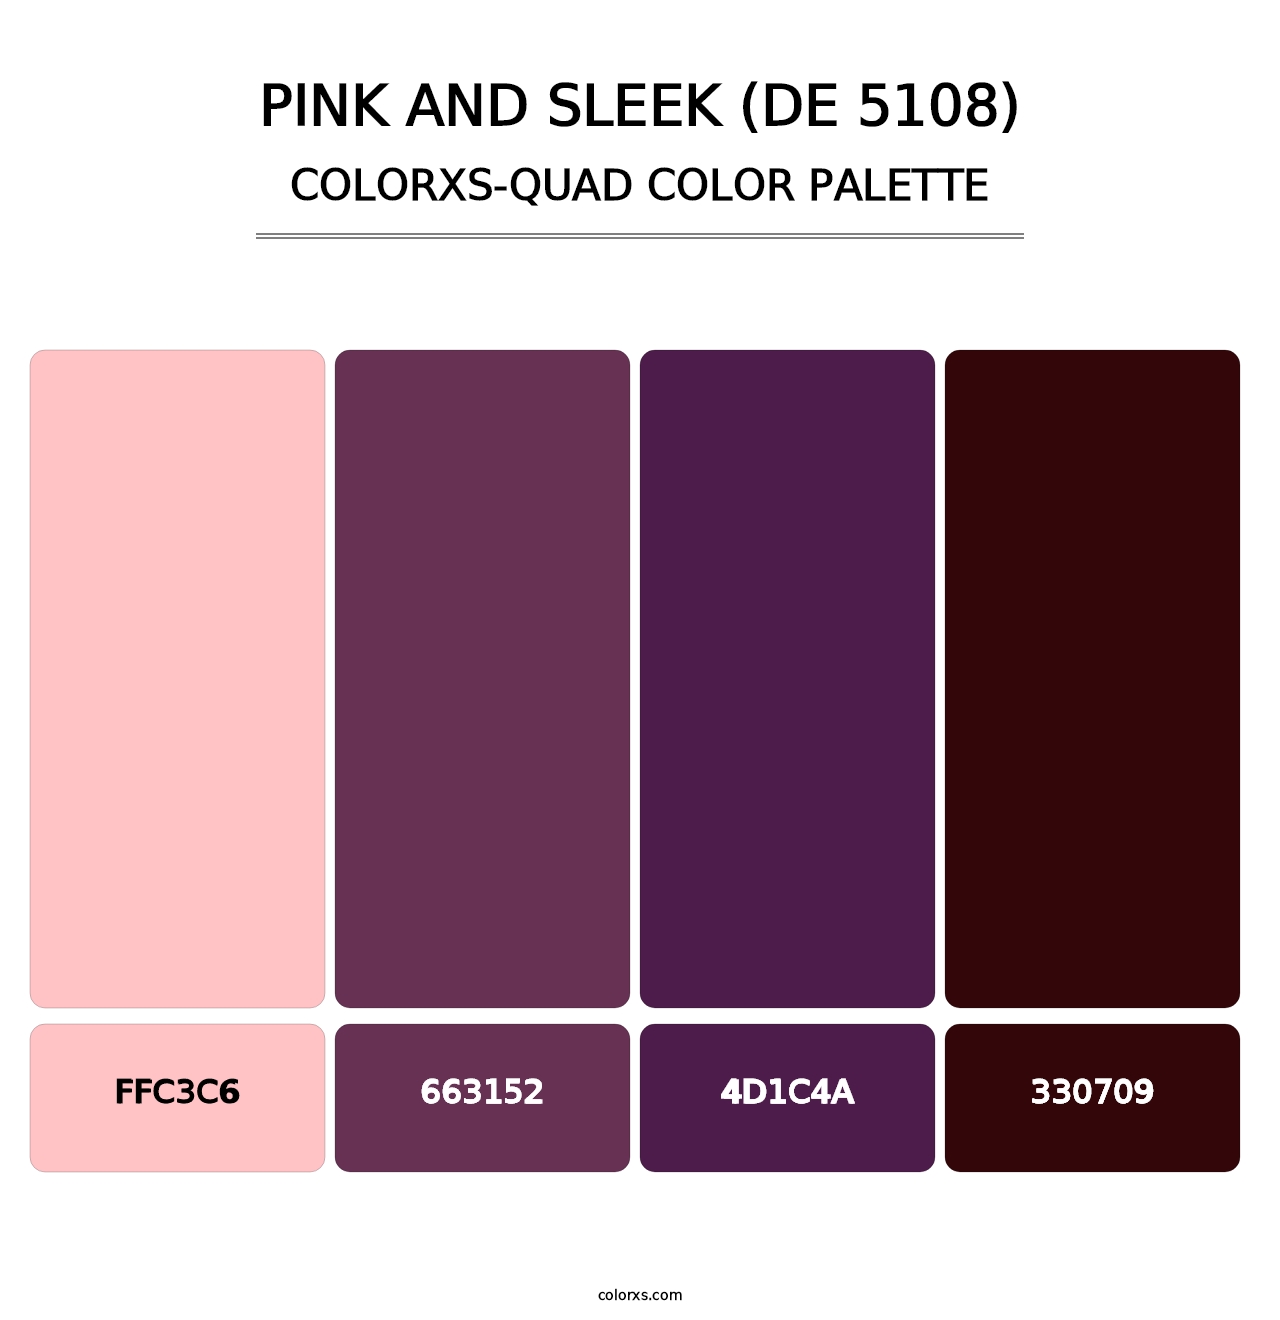 Pink and Sleek (DE 5108) - Colorxs Quad Palette